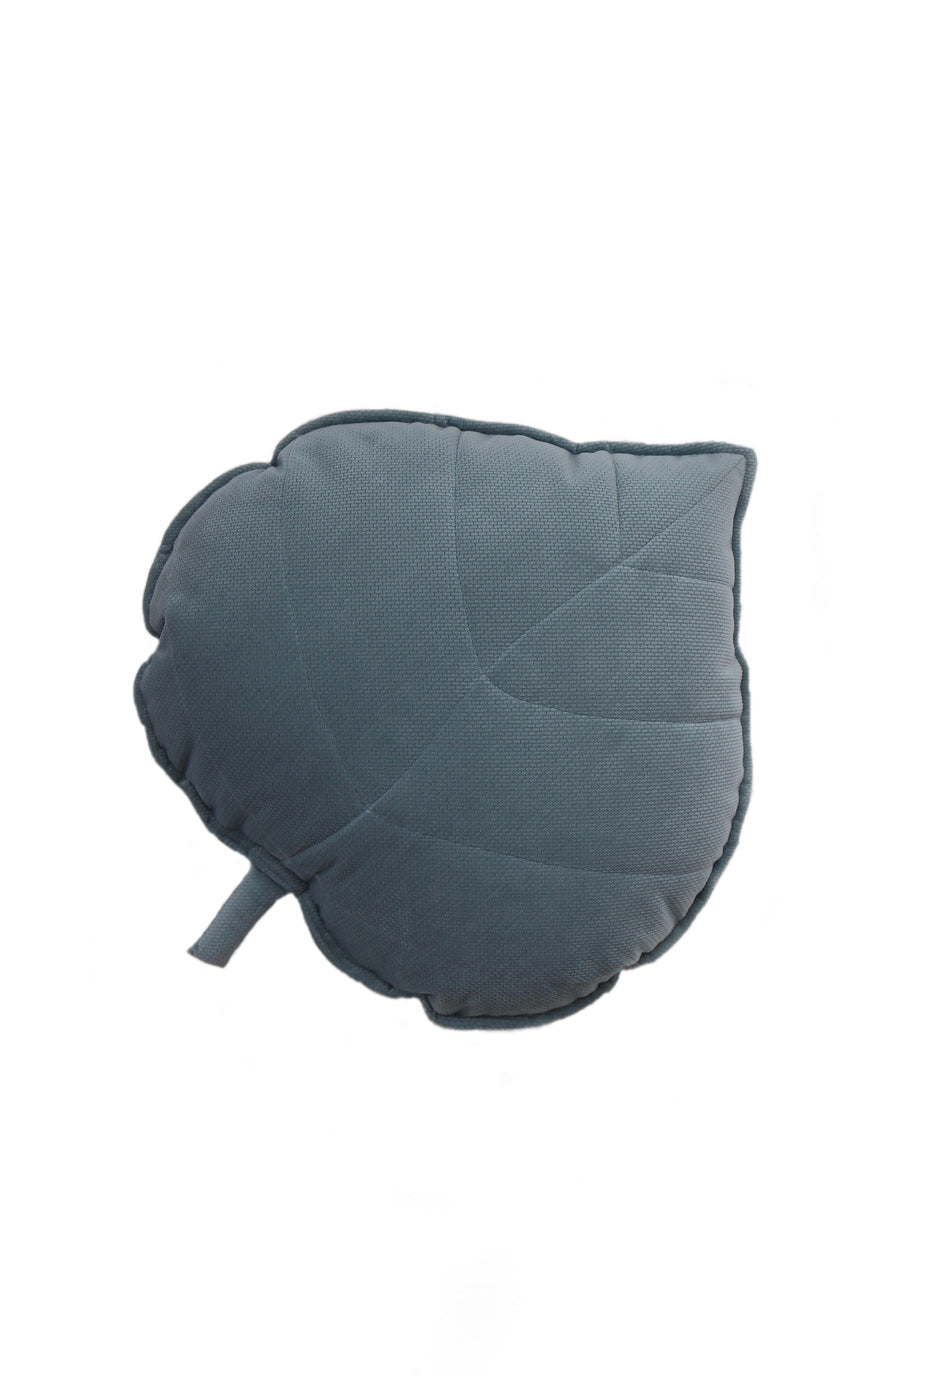 Velvet “Grey Mint” Leaf Pillow